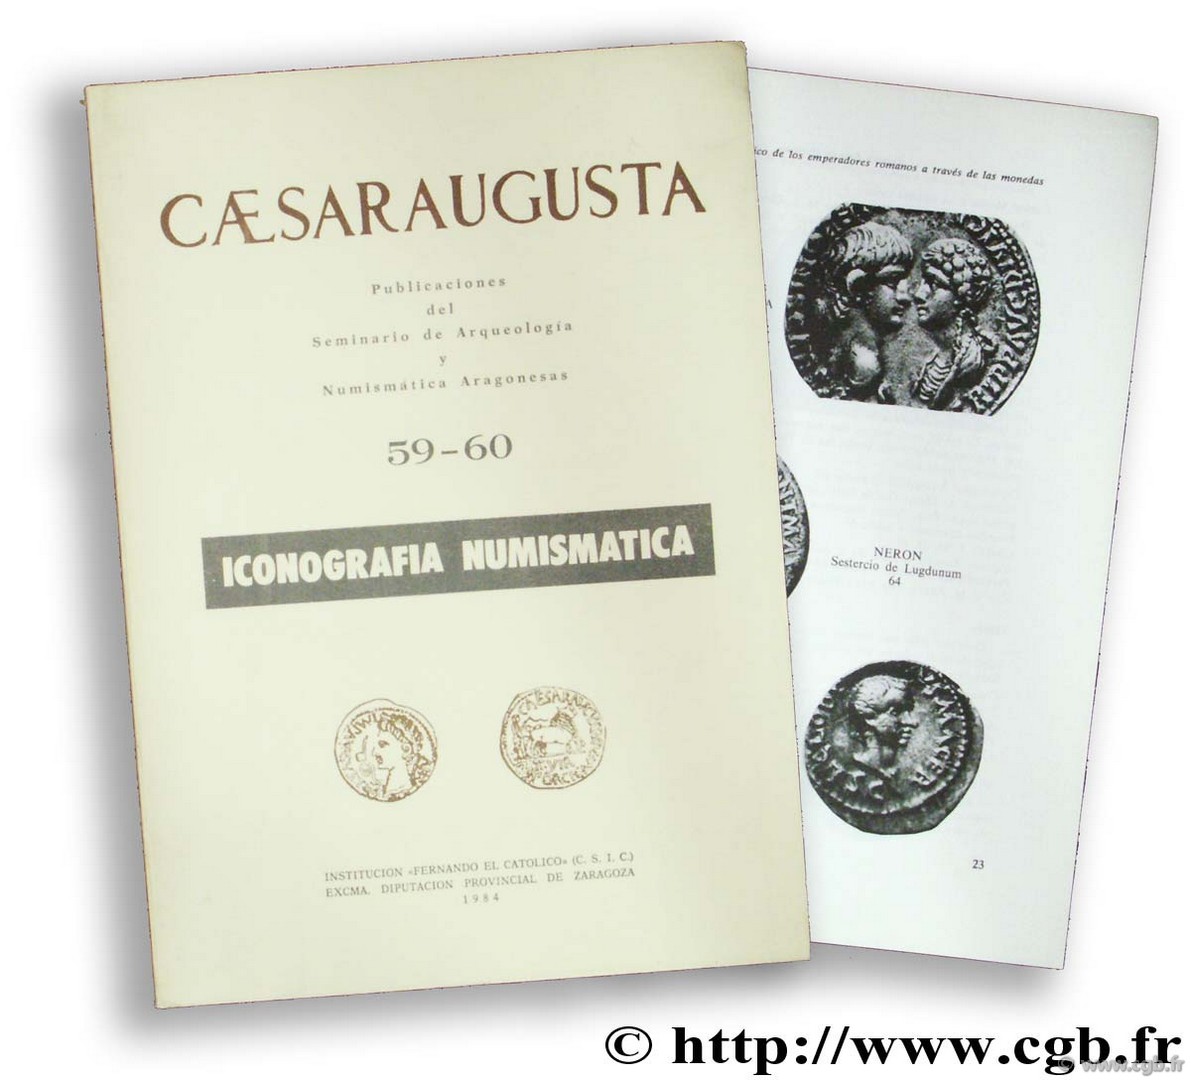 Caesaraugusta. Pubblicaciones des Seminario de Arqueología y Numismática Aragonesas 59-60. Iconografia numismatica 